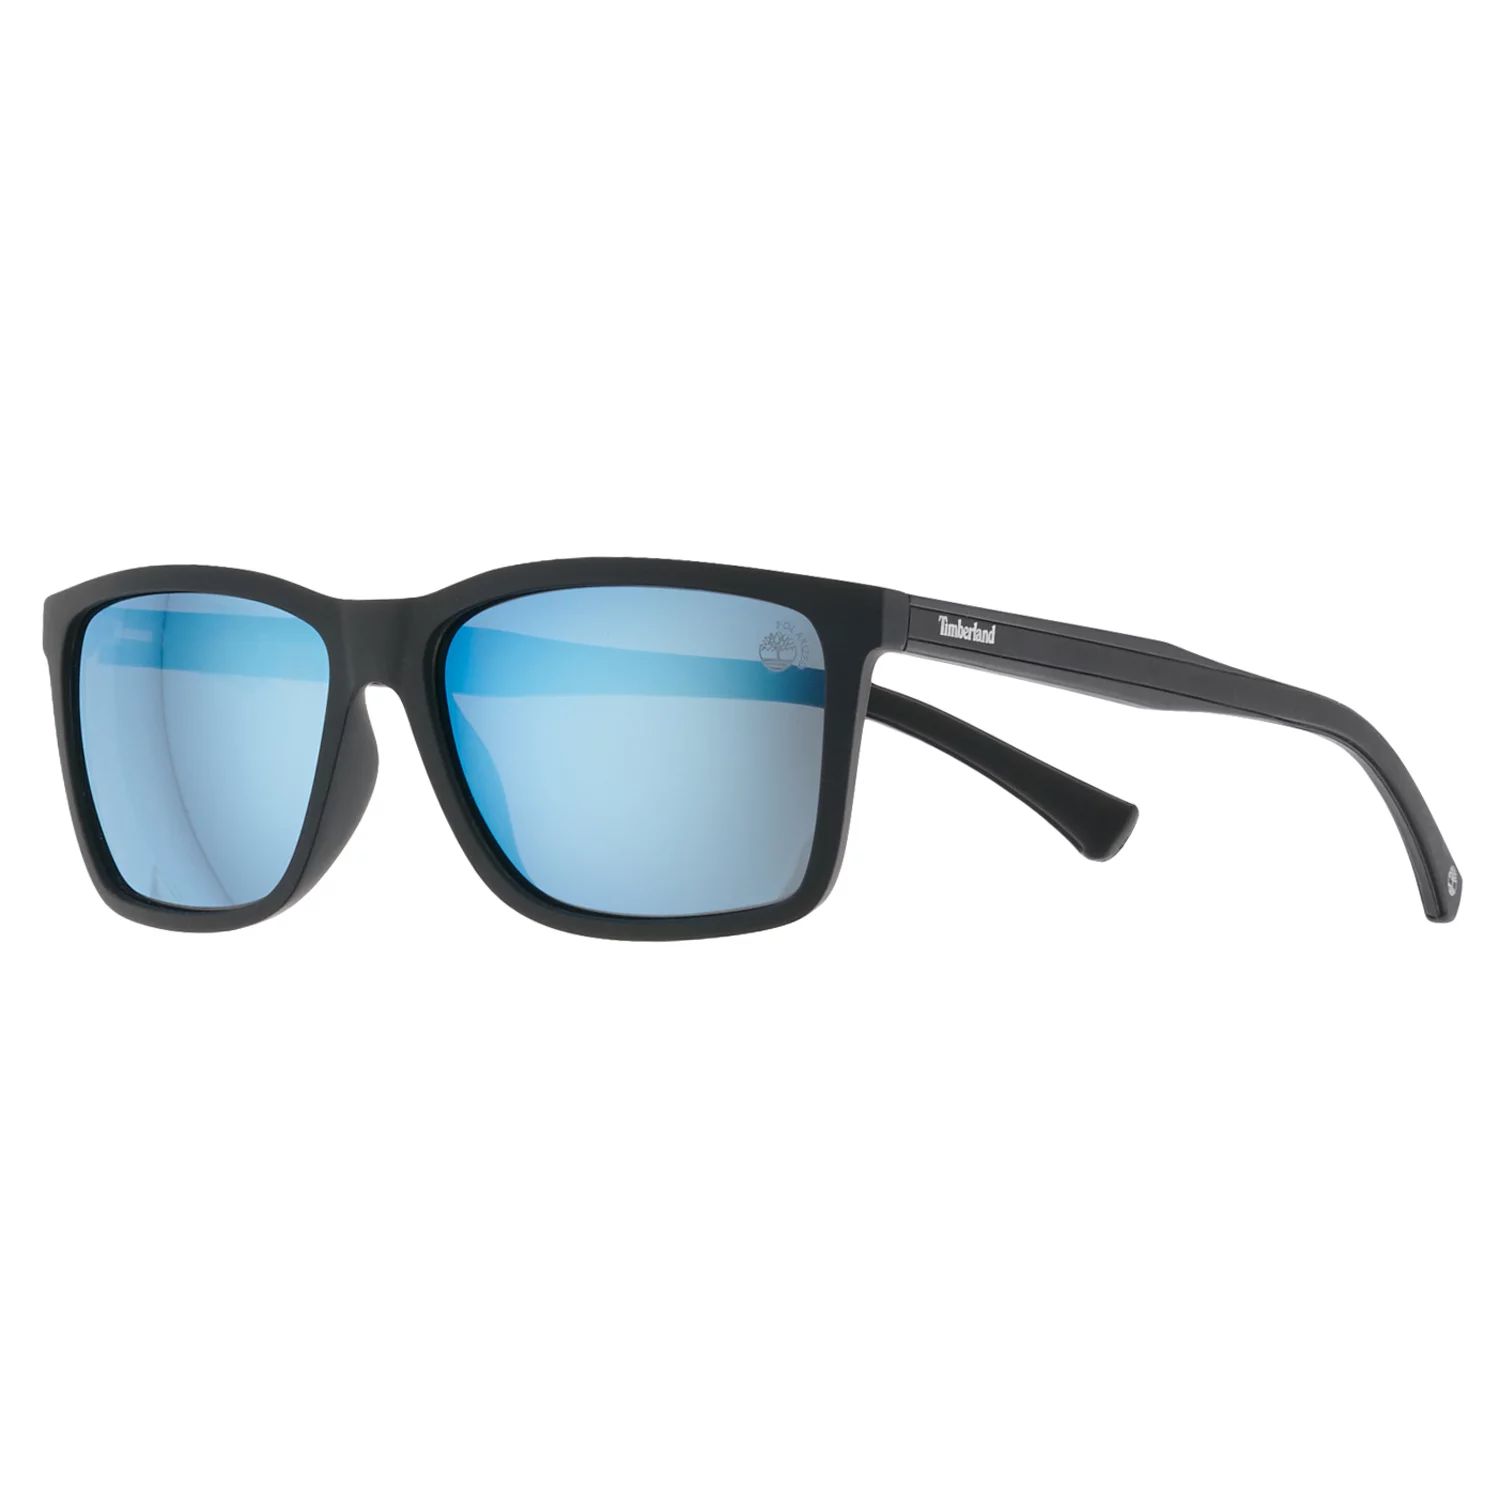 Мужские тонкие прямоугольные зеркальные и поляризованные солнцезащитные очки Timberland